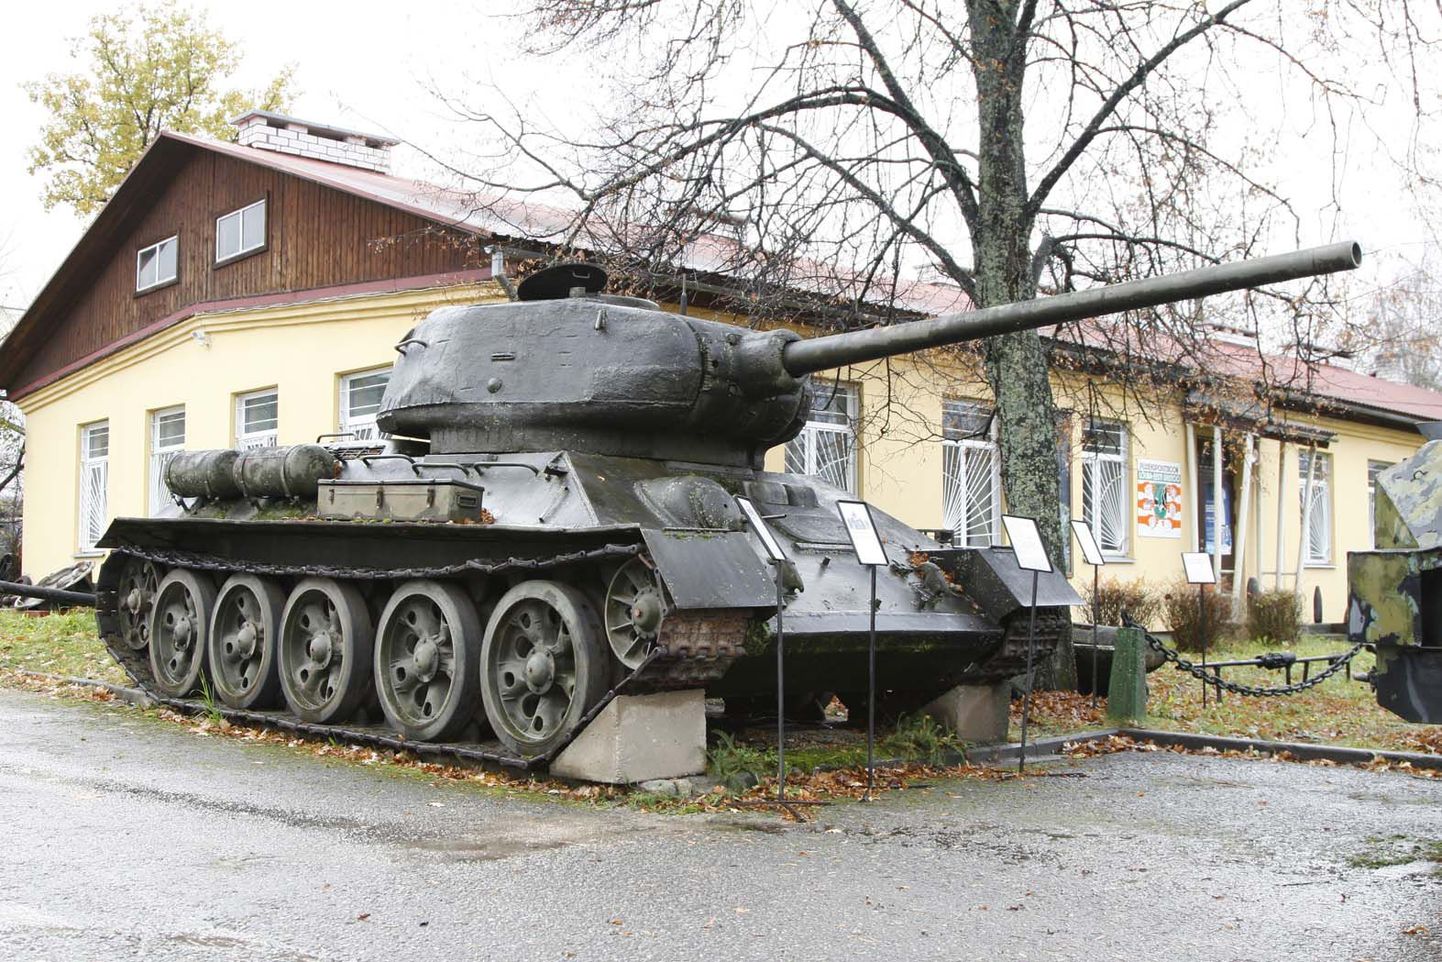 Isamaalise kasvatuse püsiekspositsiooni eksponaattank T-34.